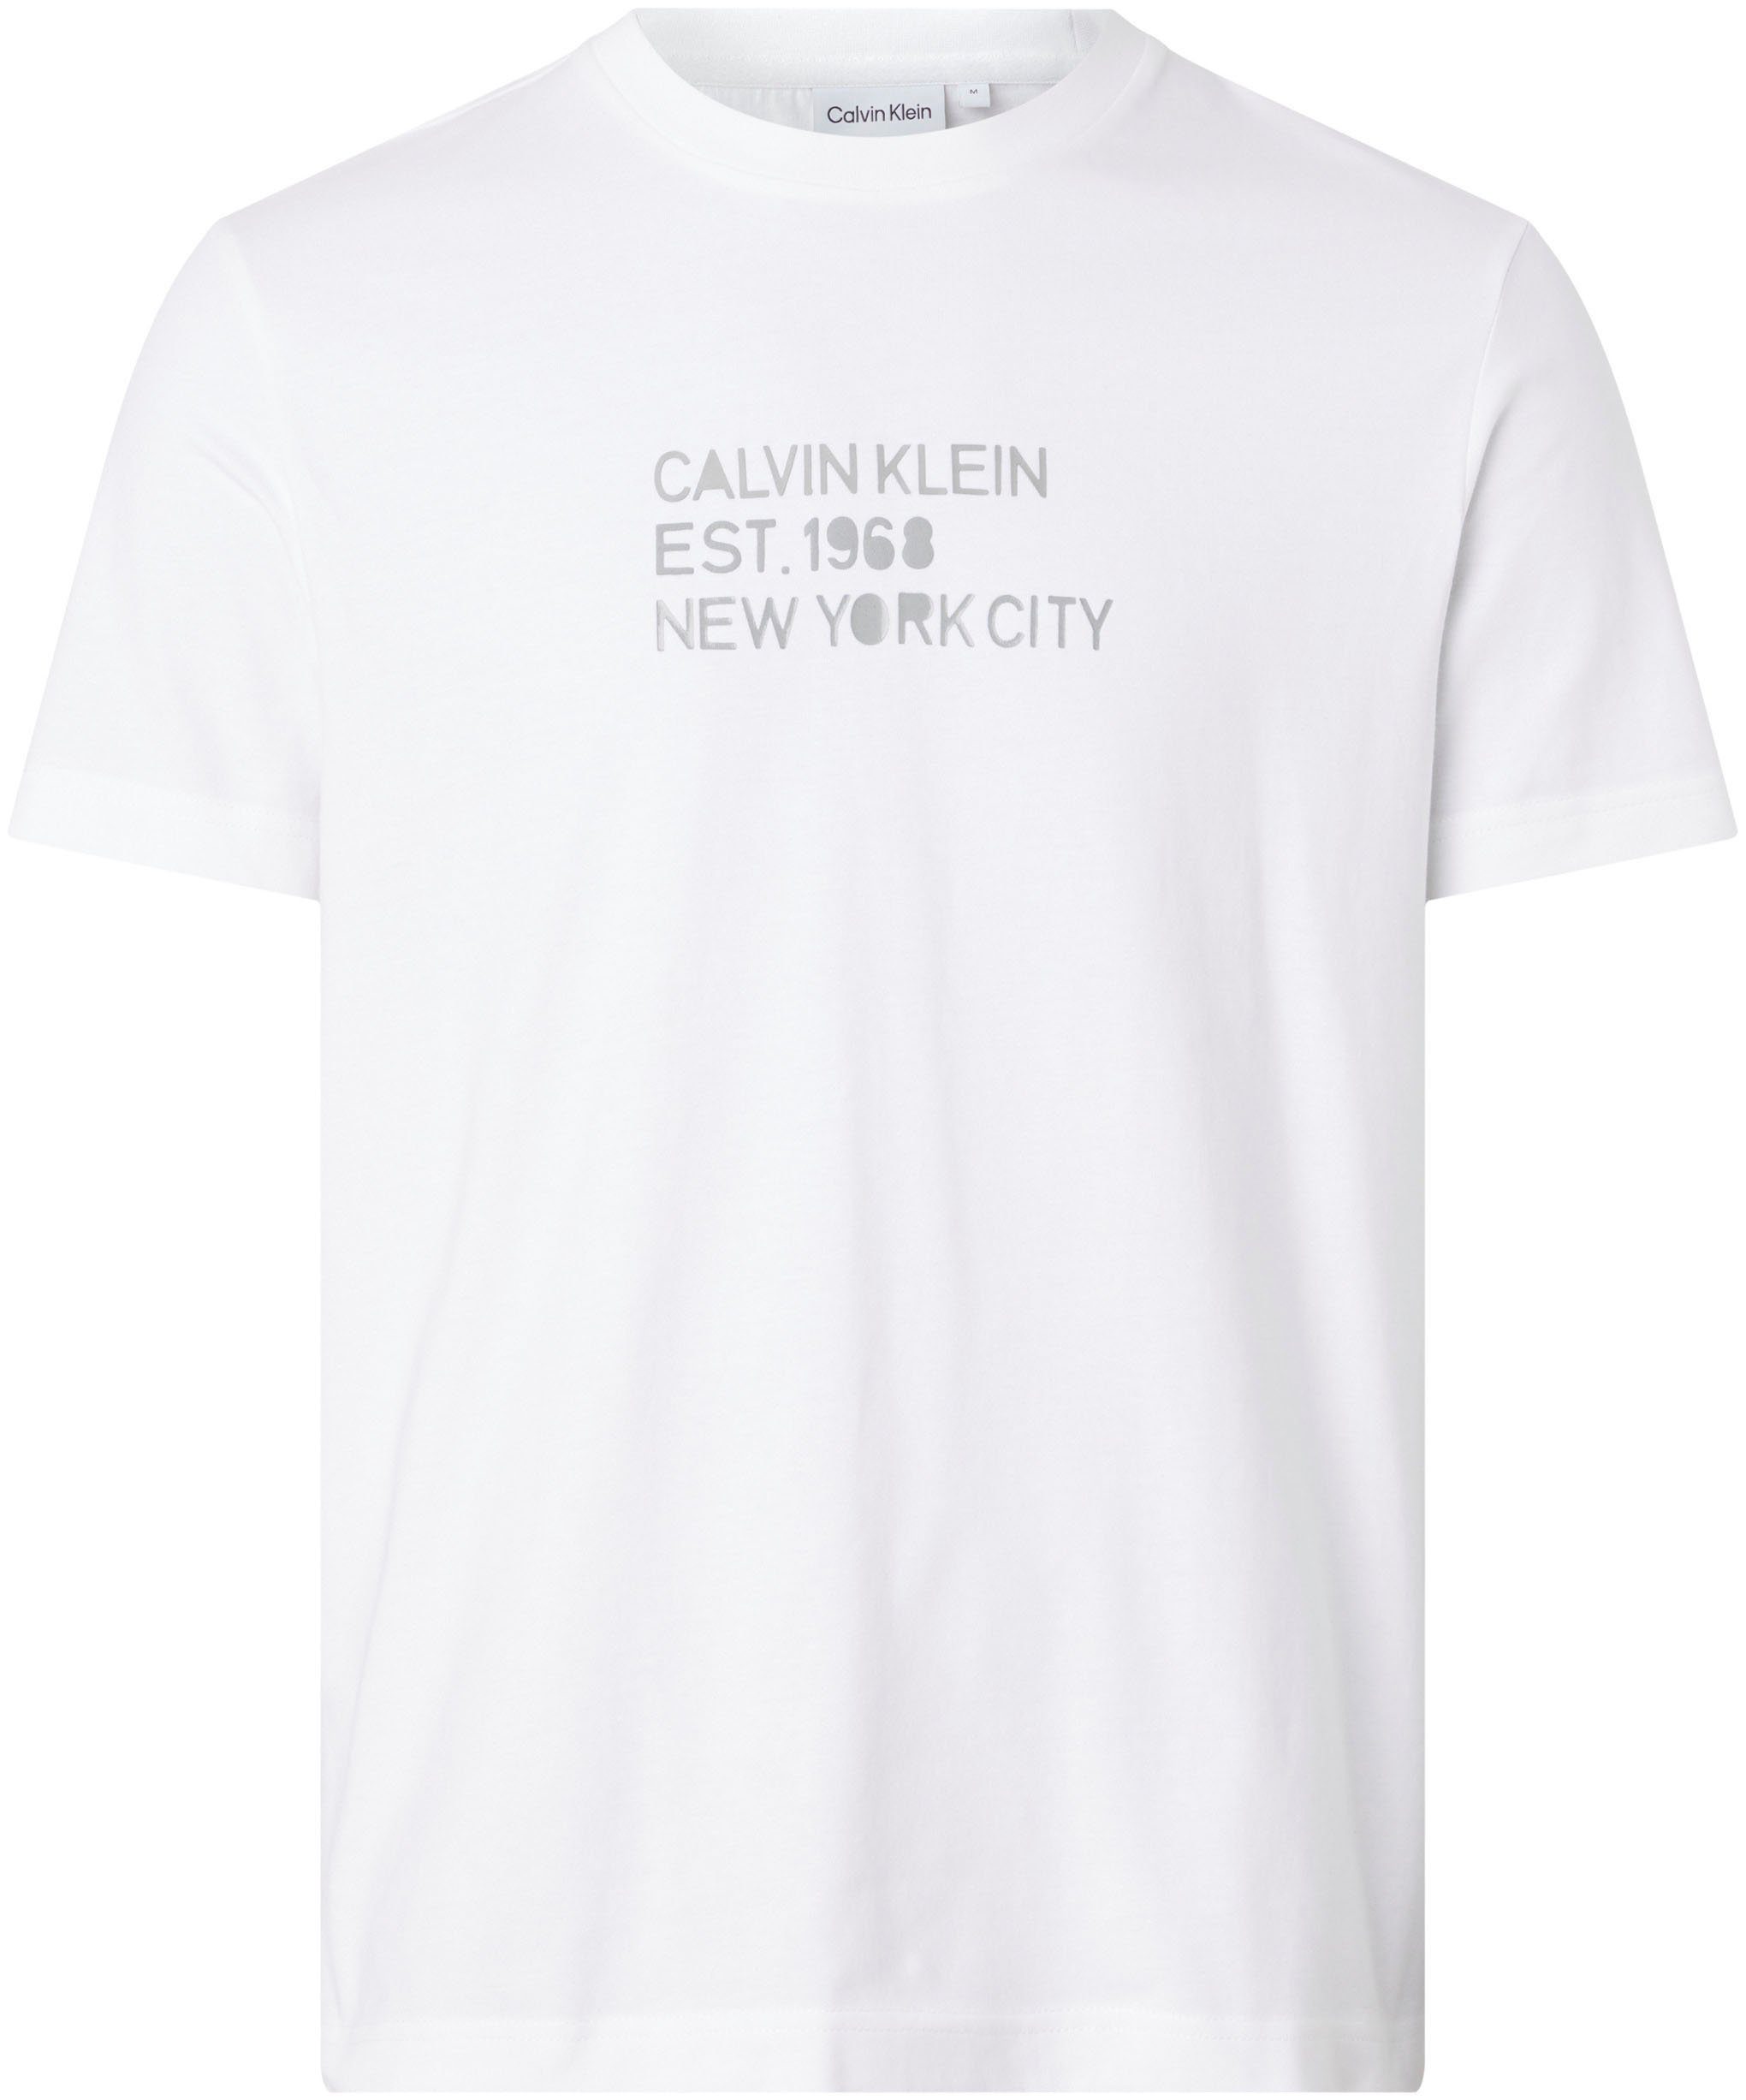 Calvin Klein T-Shirt MIXED T-SHIRT Bright LOGO White STENCIL PRINT